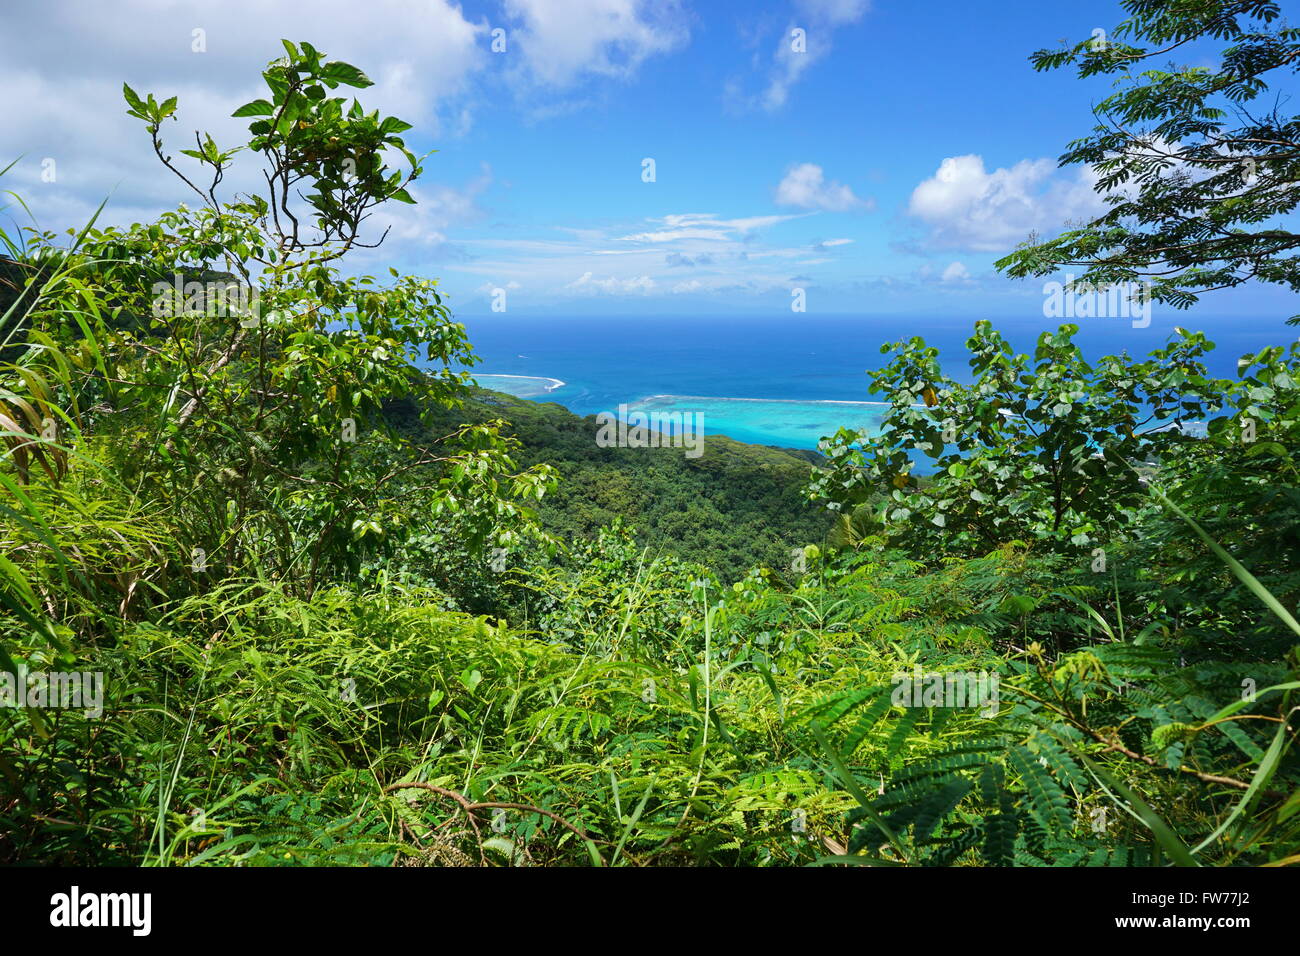 La végétation verte avec vue sur l'océan depuis les hauteurs de Huahine Nui, l'île de l'océan Pacifique, Polynésie Française Banque D'Images